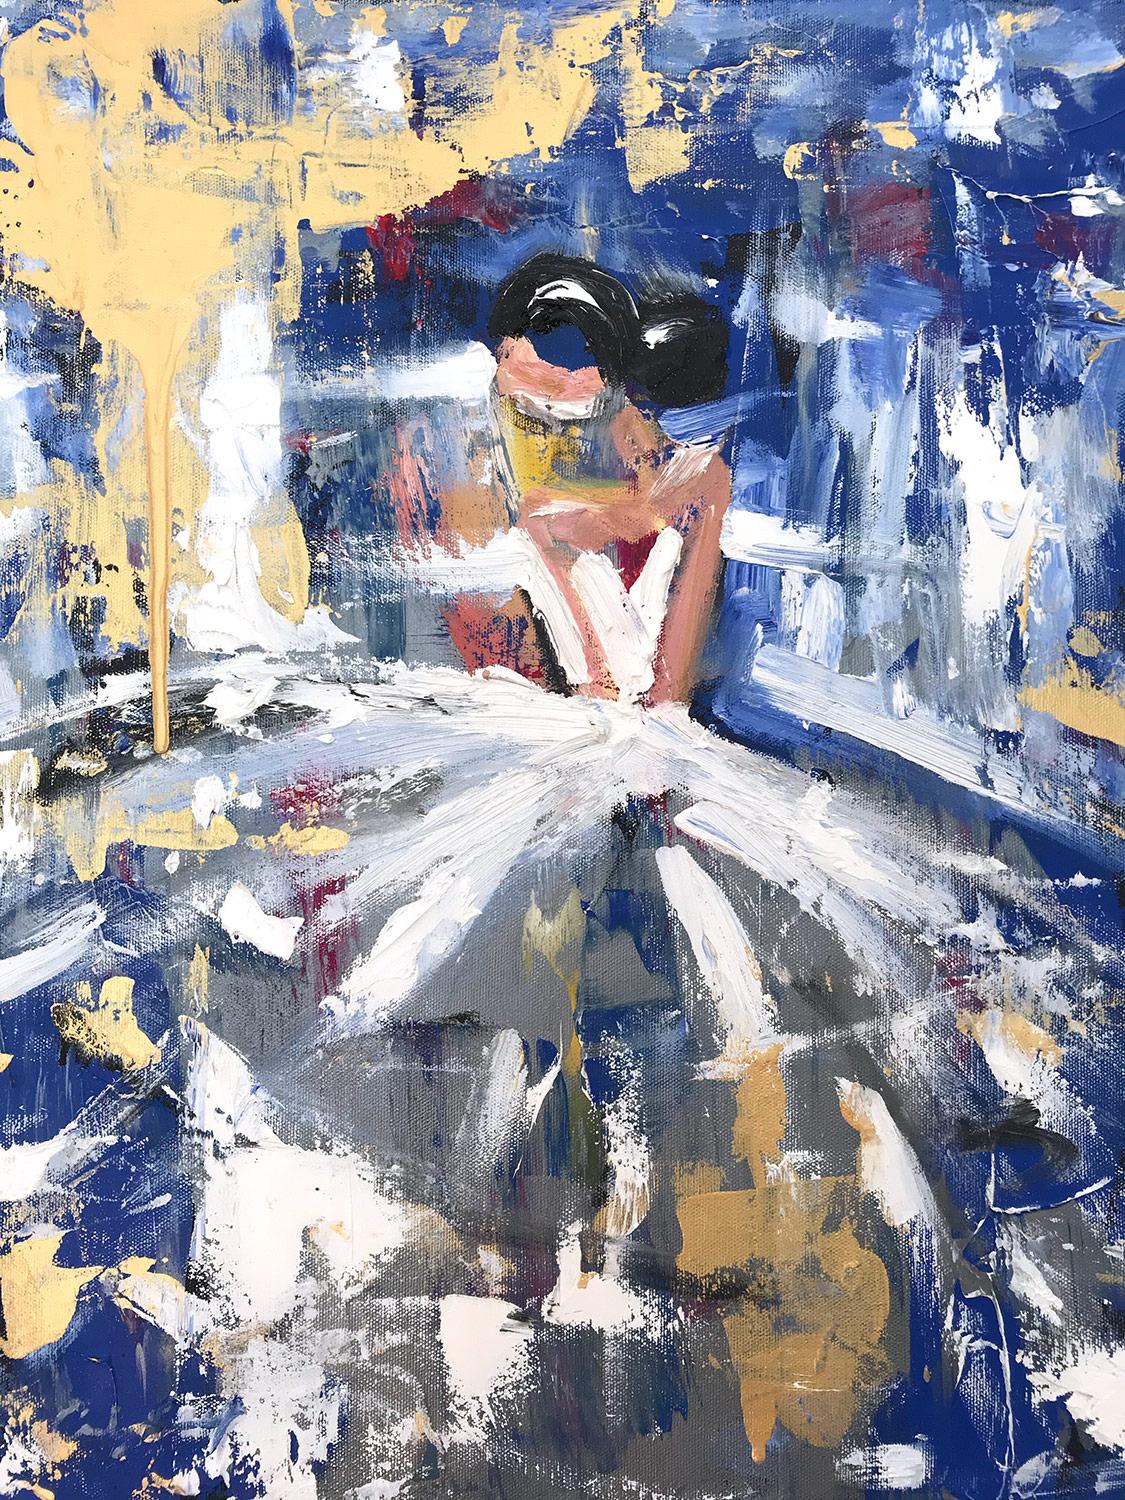 Figurative Painting Cindy Shaoul - "Sapphire" - Figure abstraite avec robe - Peinture à l'huile sur toile de haute couture française